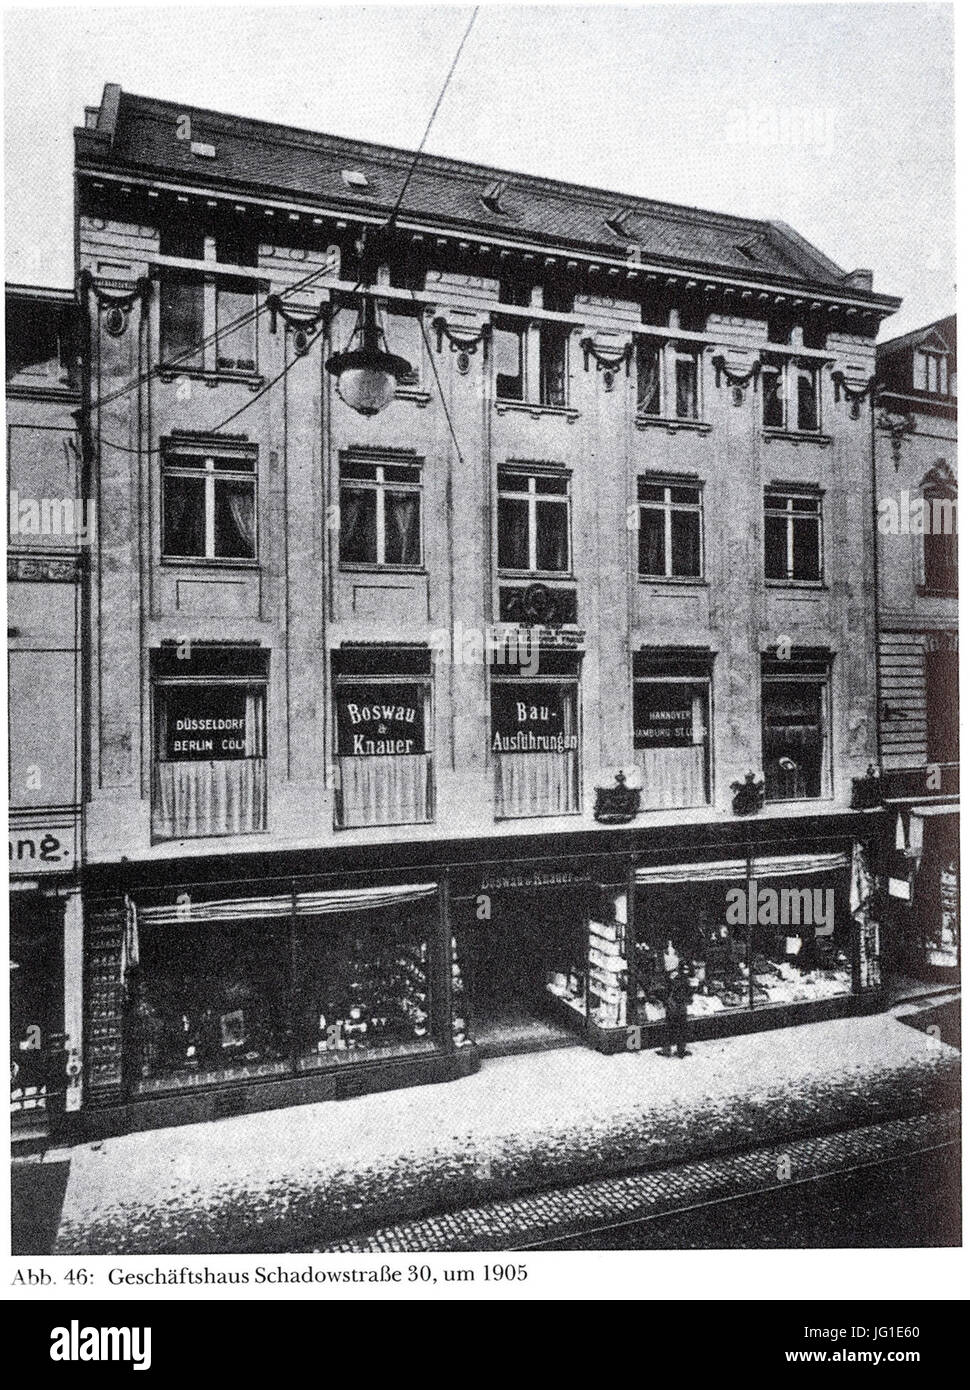 Düsseldorf, Geschäftshaus Schadowstraße 30, Mendelssohn-Haus, um 1905 (Peter Hüttenberger - Die Industrie- und Verwaltungsstadt (20. Jahrhundert) Düsseldorf. Band 3. Schwann, Düsseldorf 1990) Stock Photo